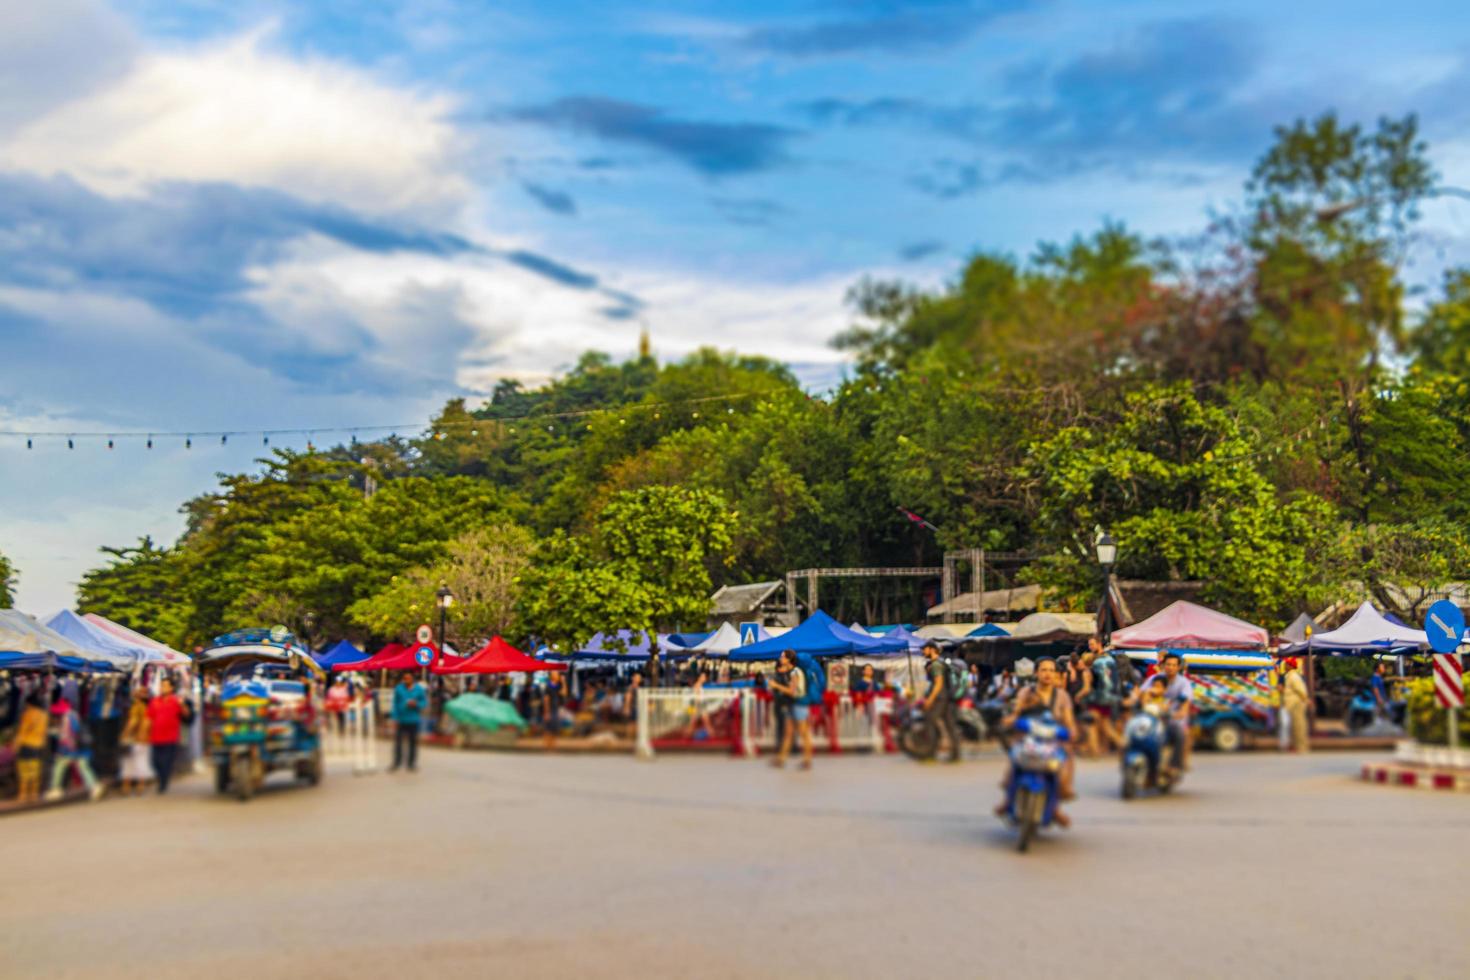 luang prabang, laos 2018- tipica strada colorata e paesaggio urbano della città vecchia luang prabang, laos foto